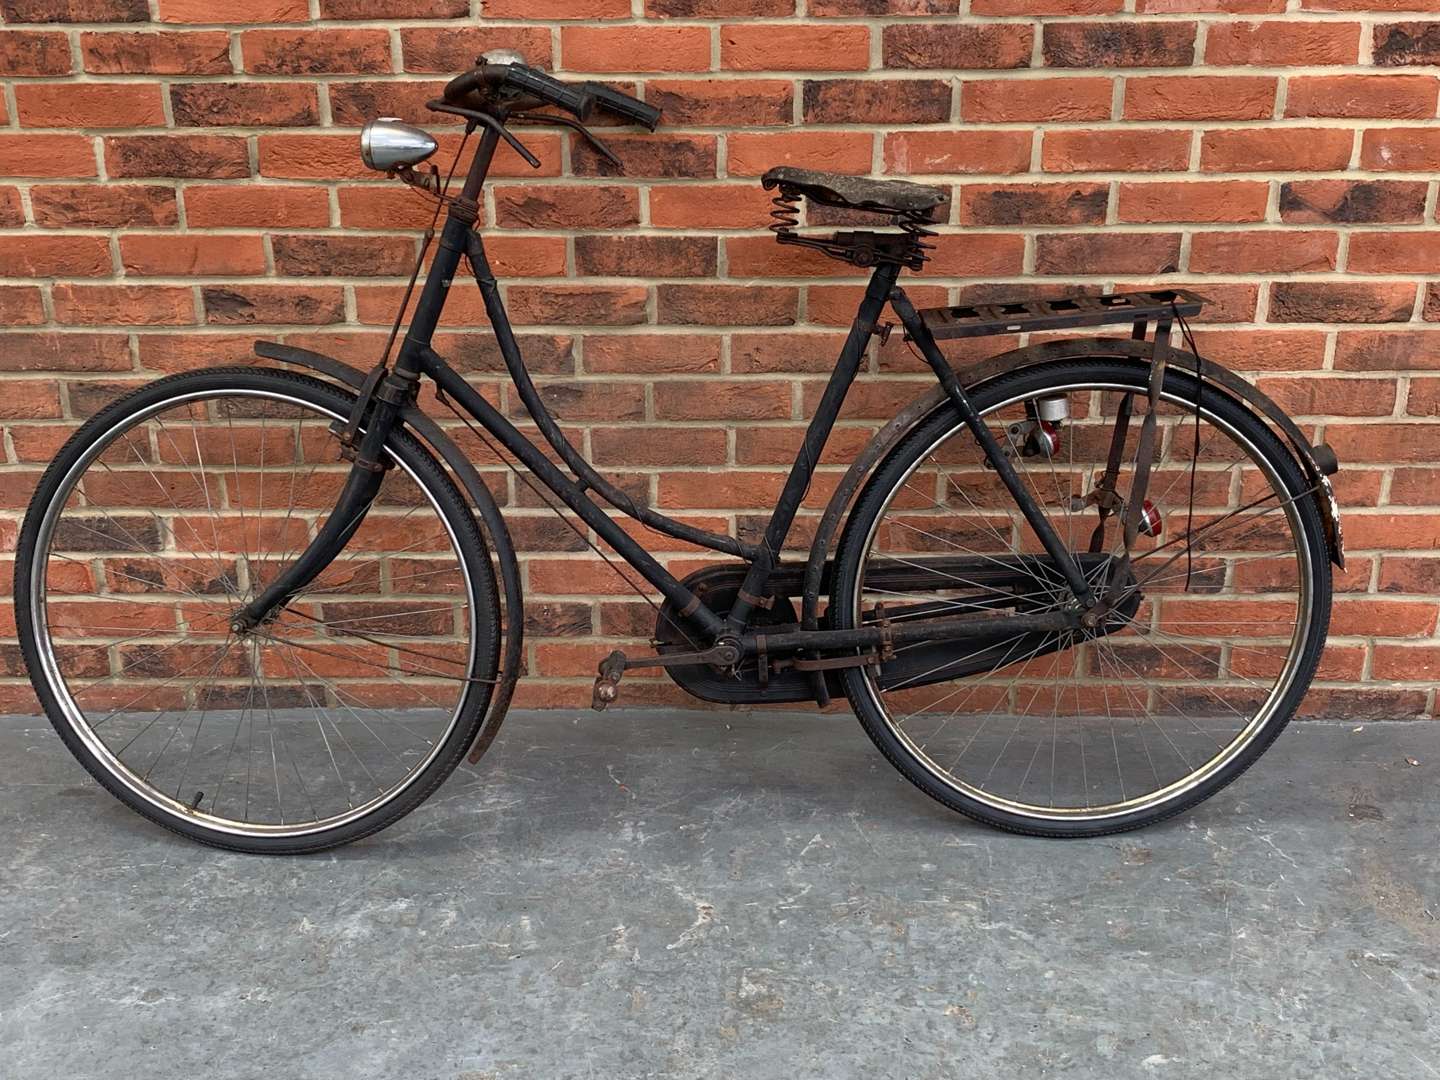 <p>Vintage Bicycle With Rod Brakes&nbsp;</p>